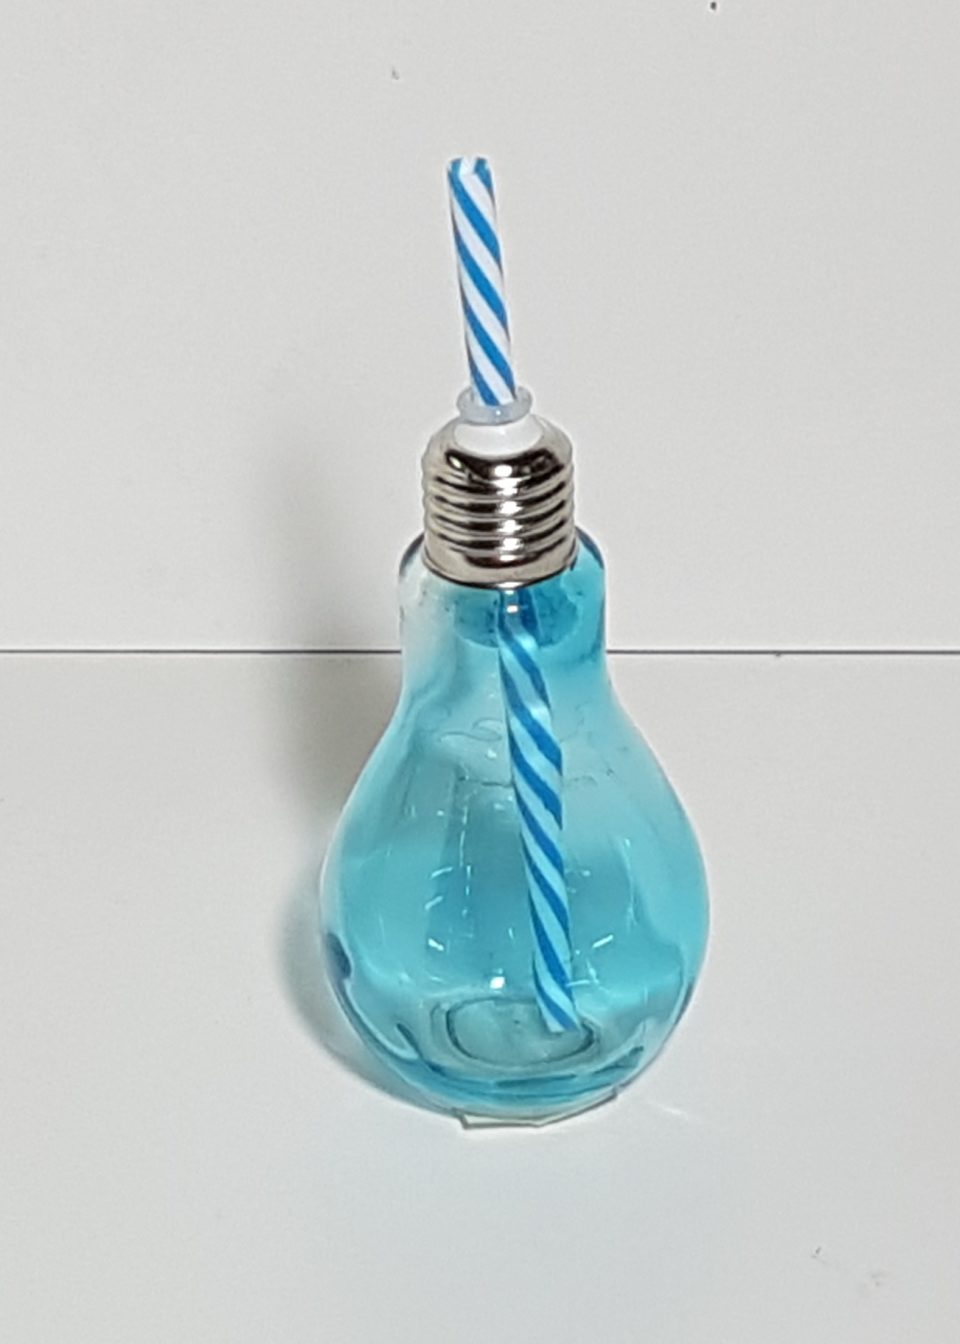 Este producto se trata de una Taza de cristal de color azul con forma de bombilla azul, usada para tomar líquidos